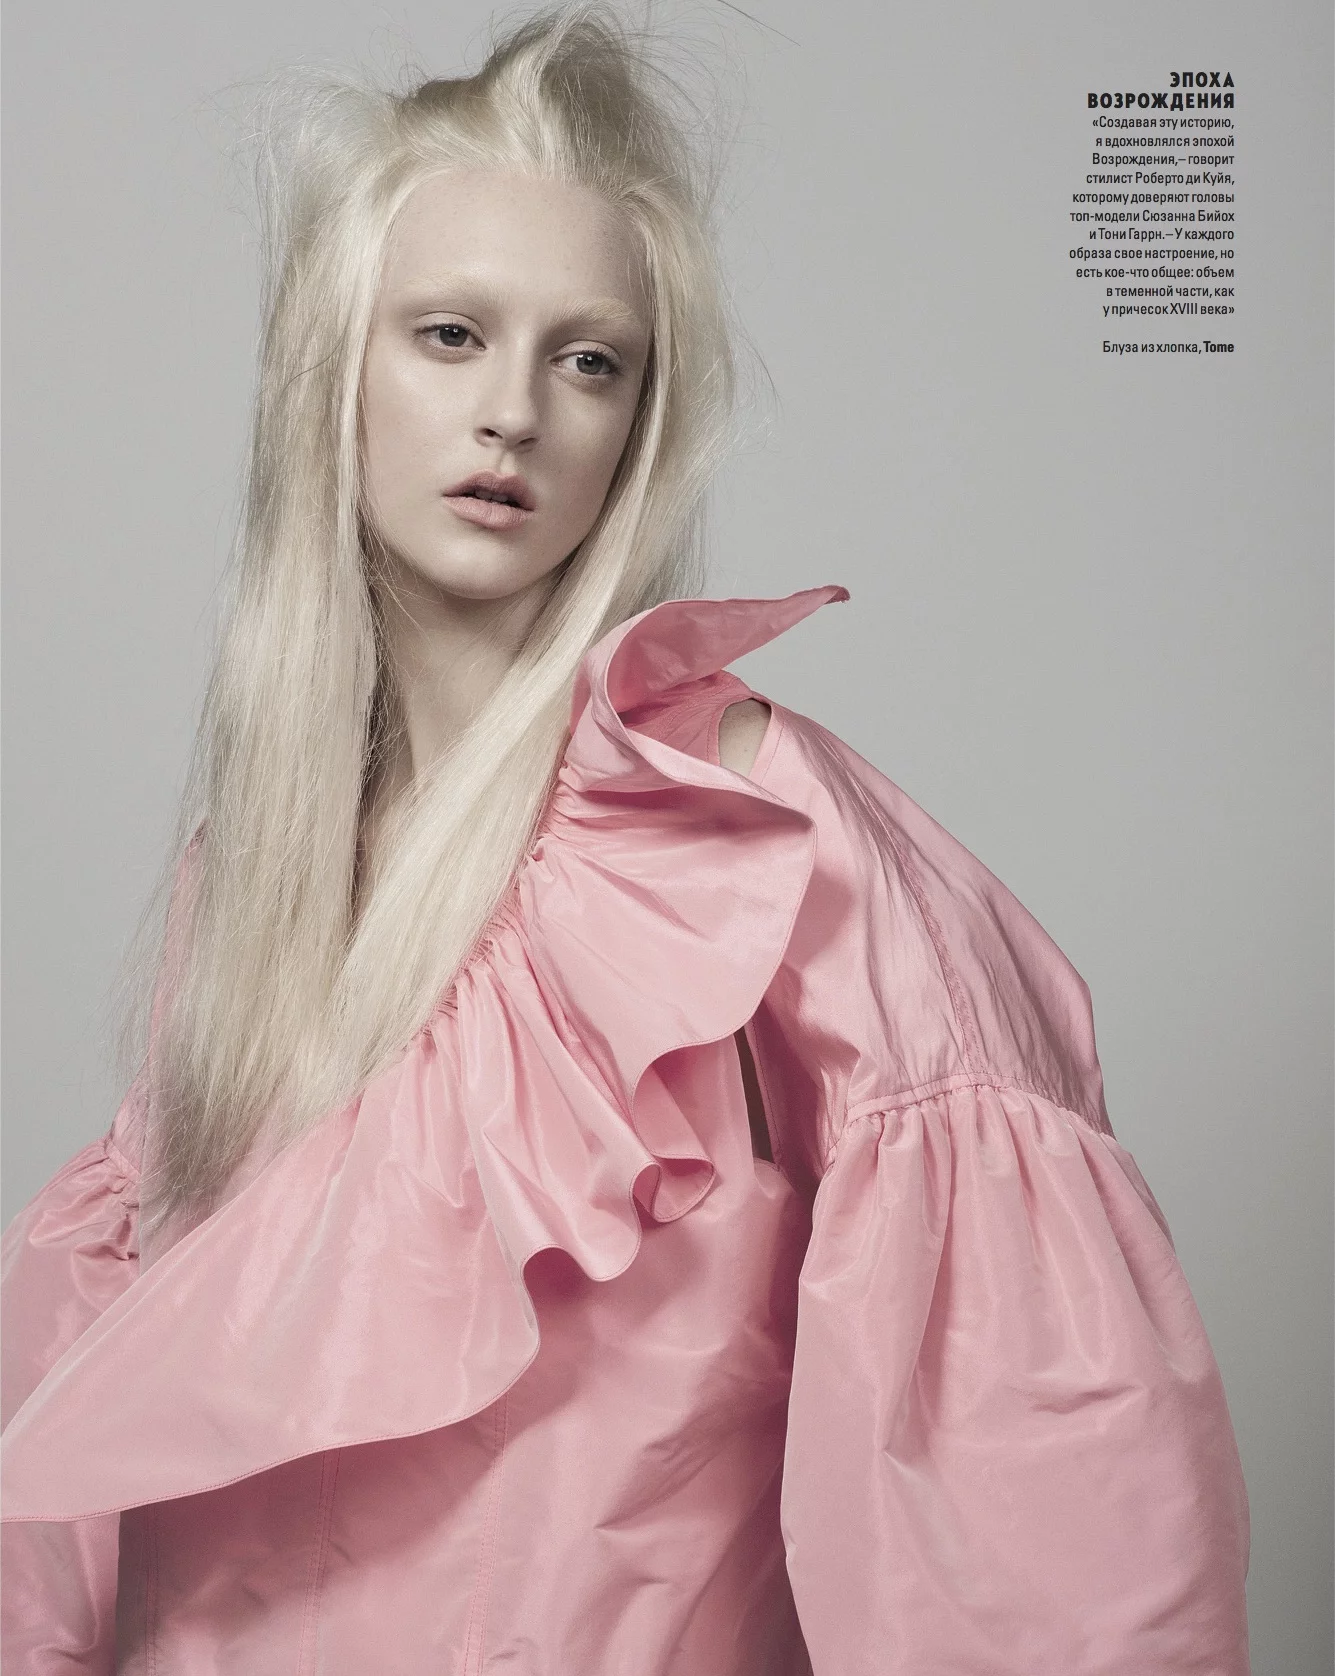 Vogue Ukraine 2 by Ralph MECKE